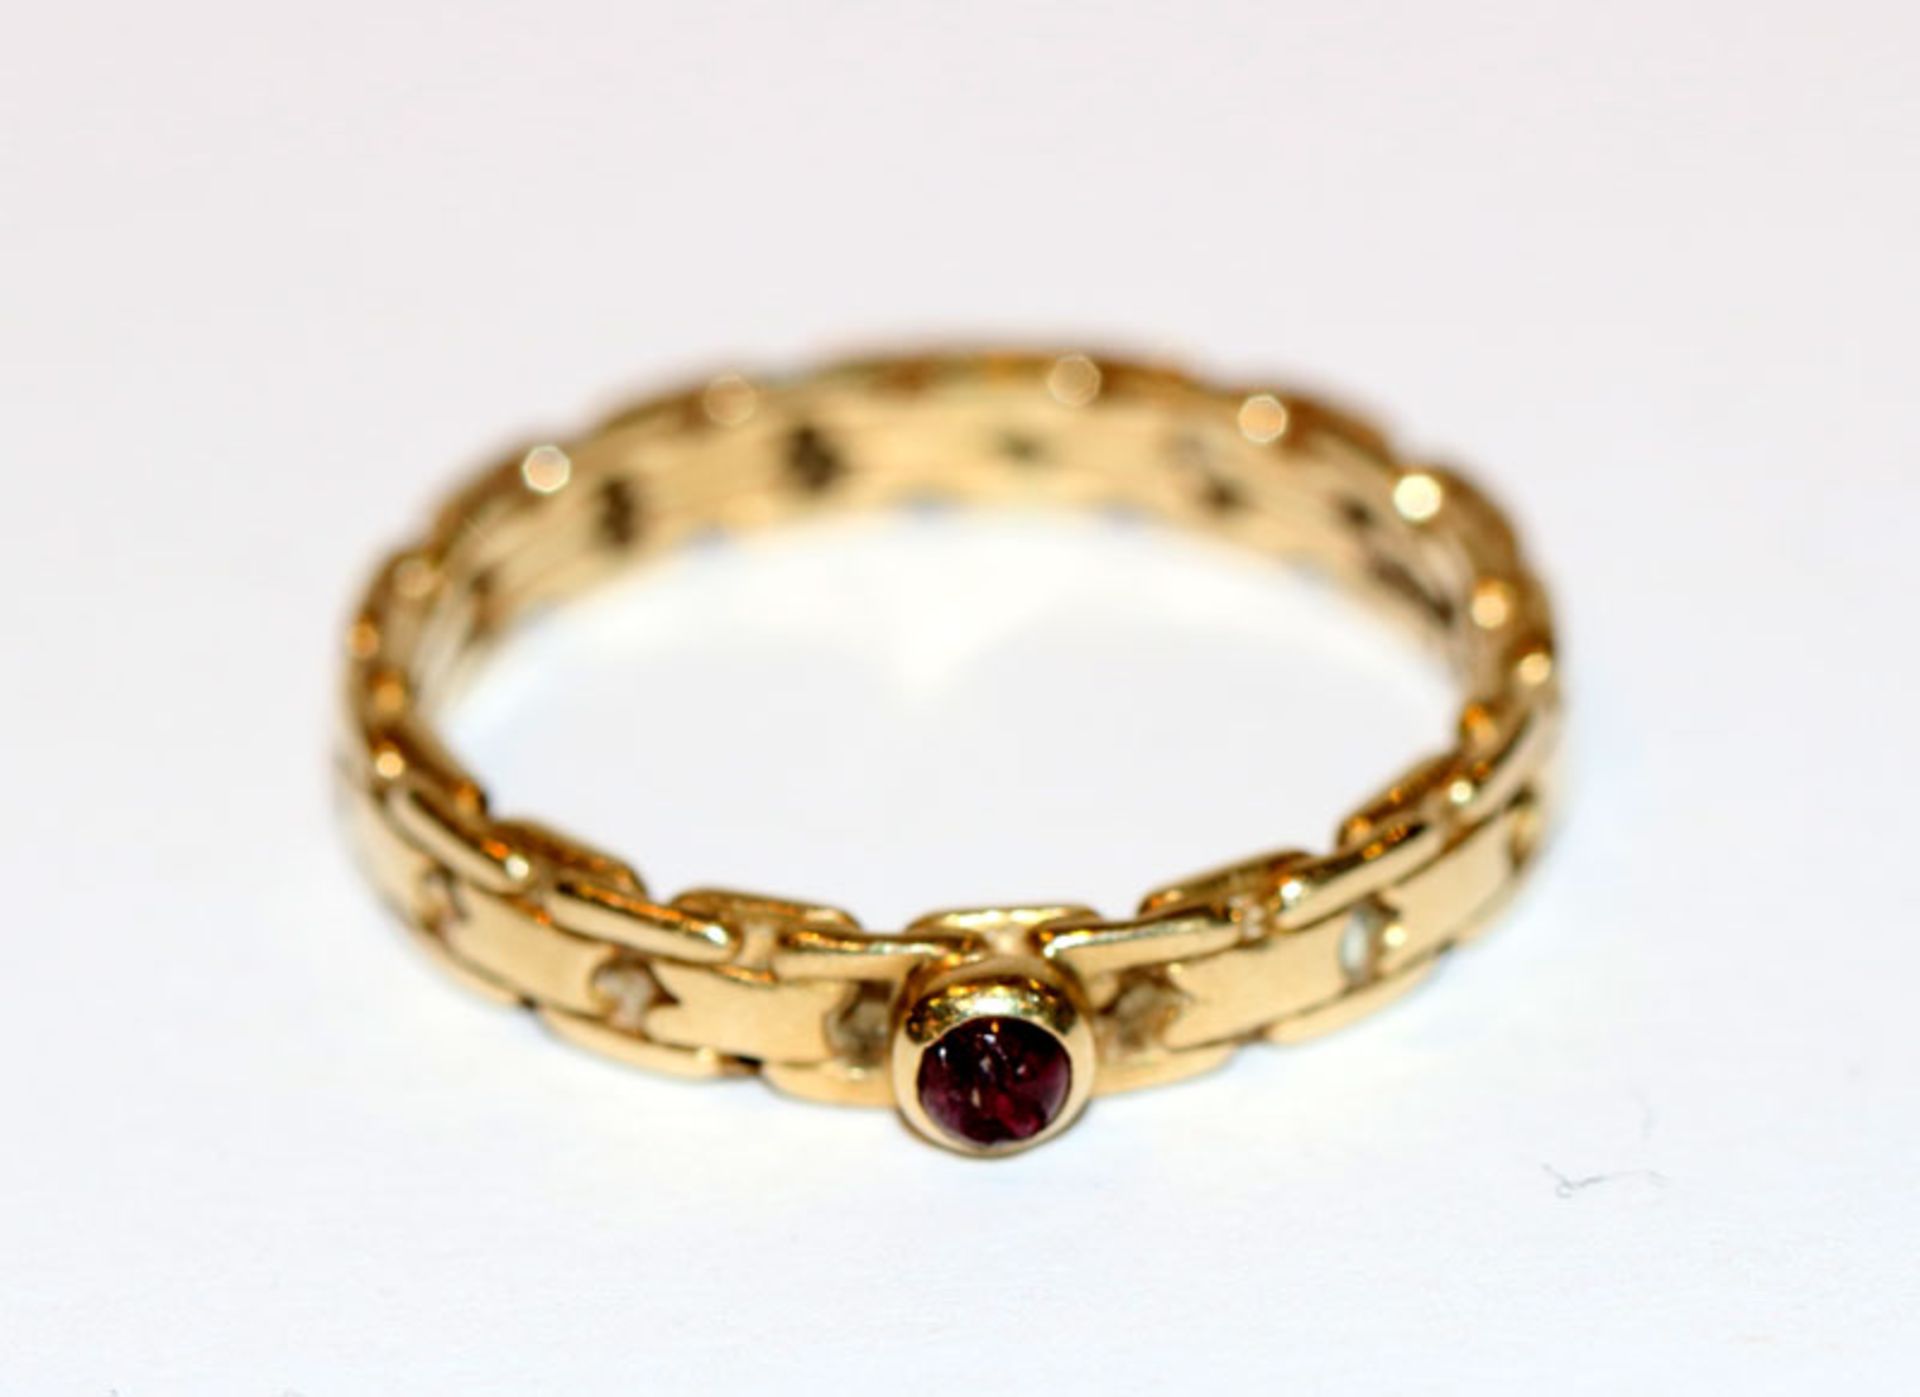 14 k Gelbgold Ring in Kettenoptik mit kleinem Rubin, beschädigt, Gr. 56, 3,3 gr.